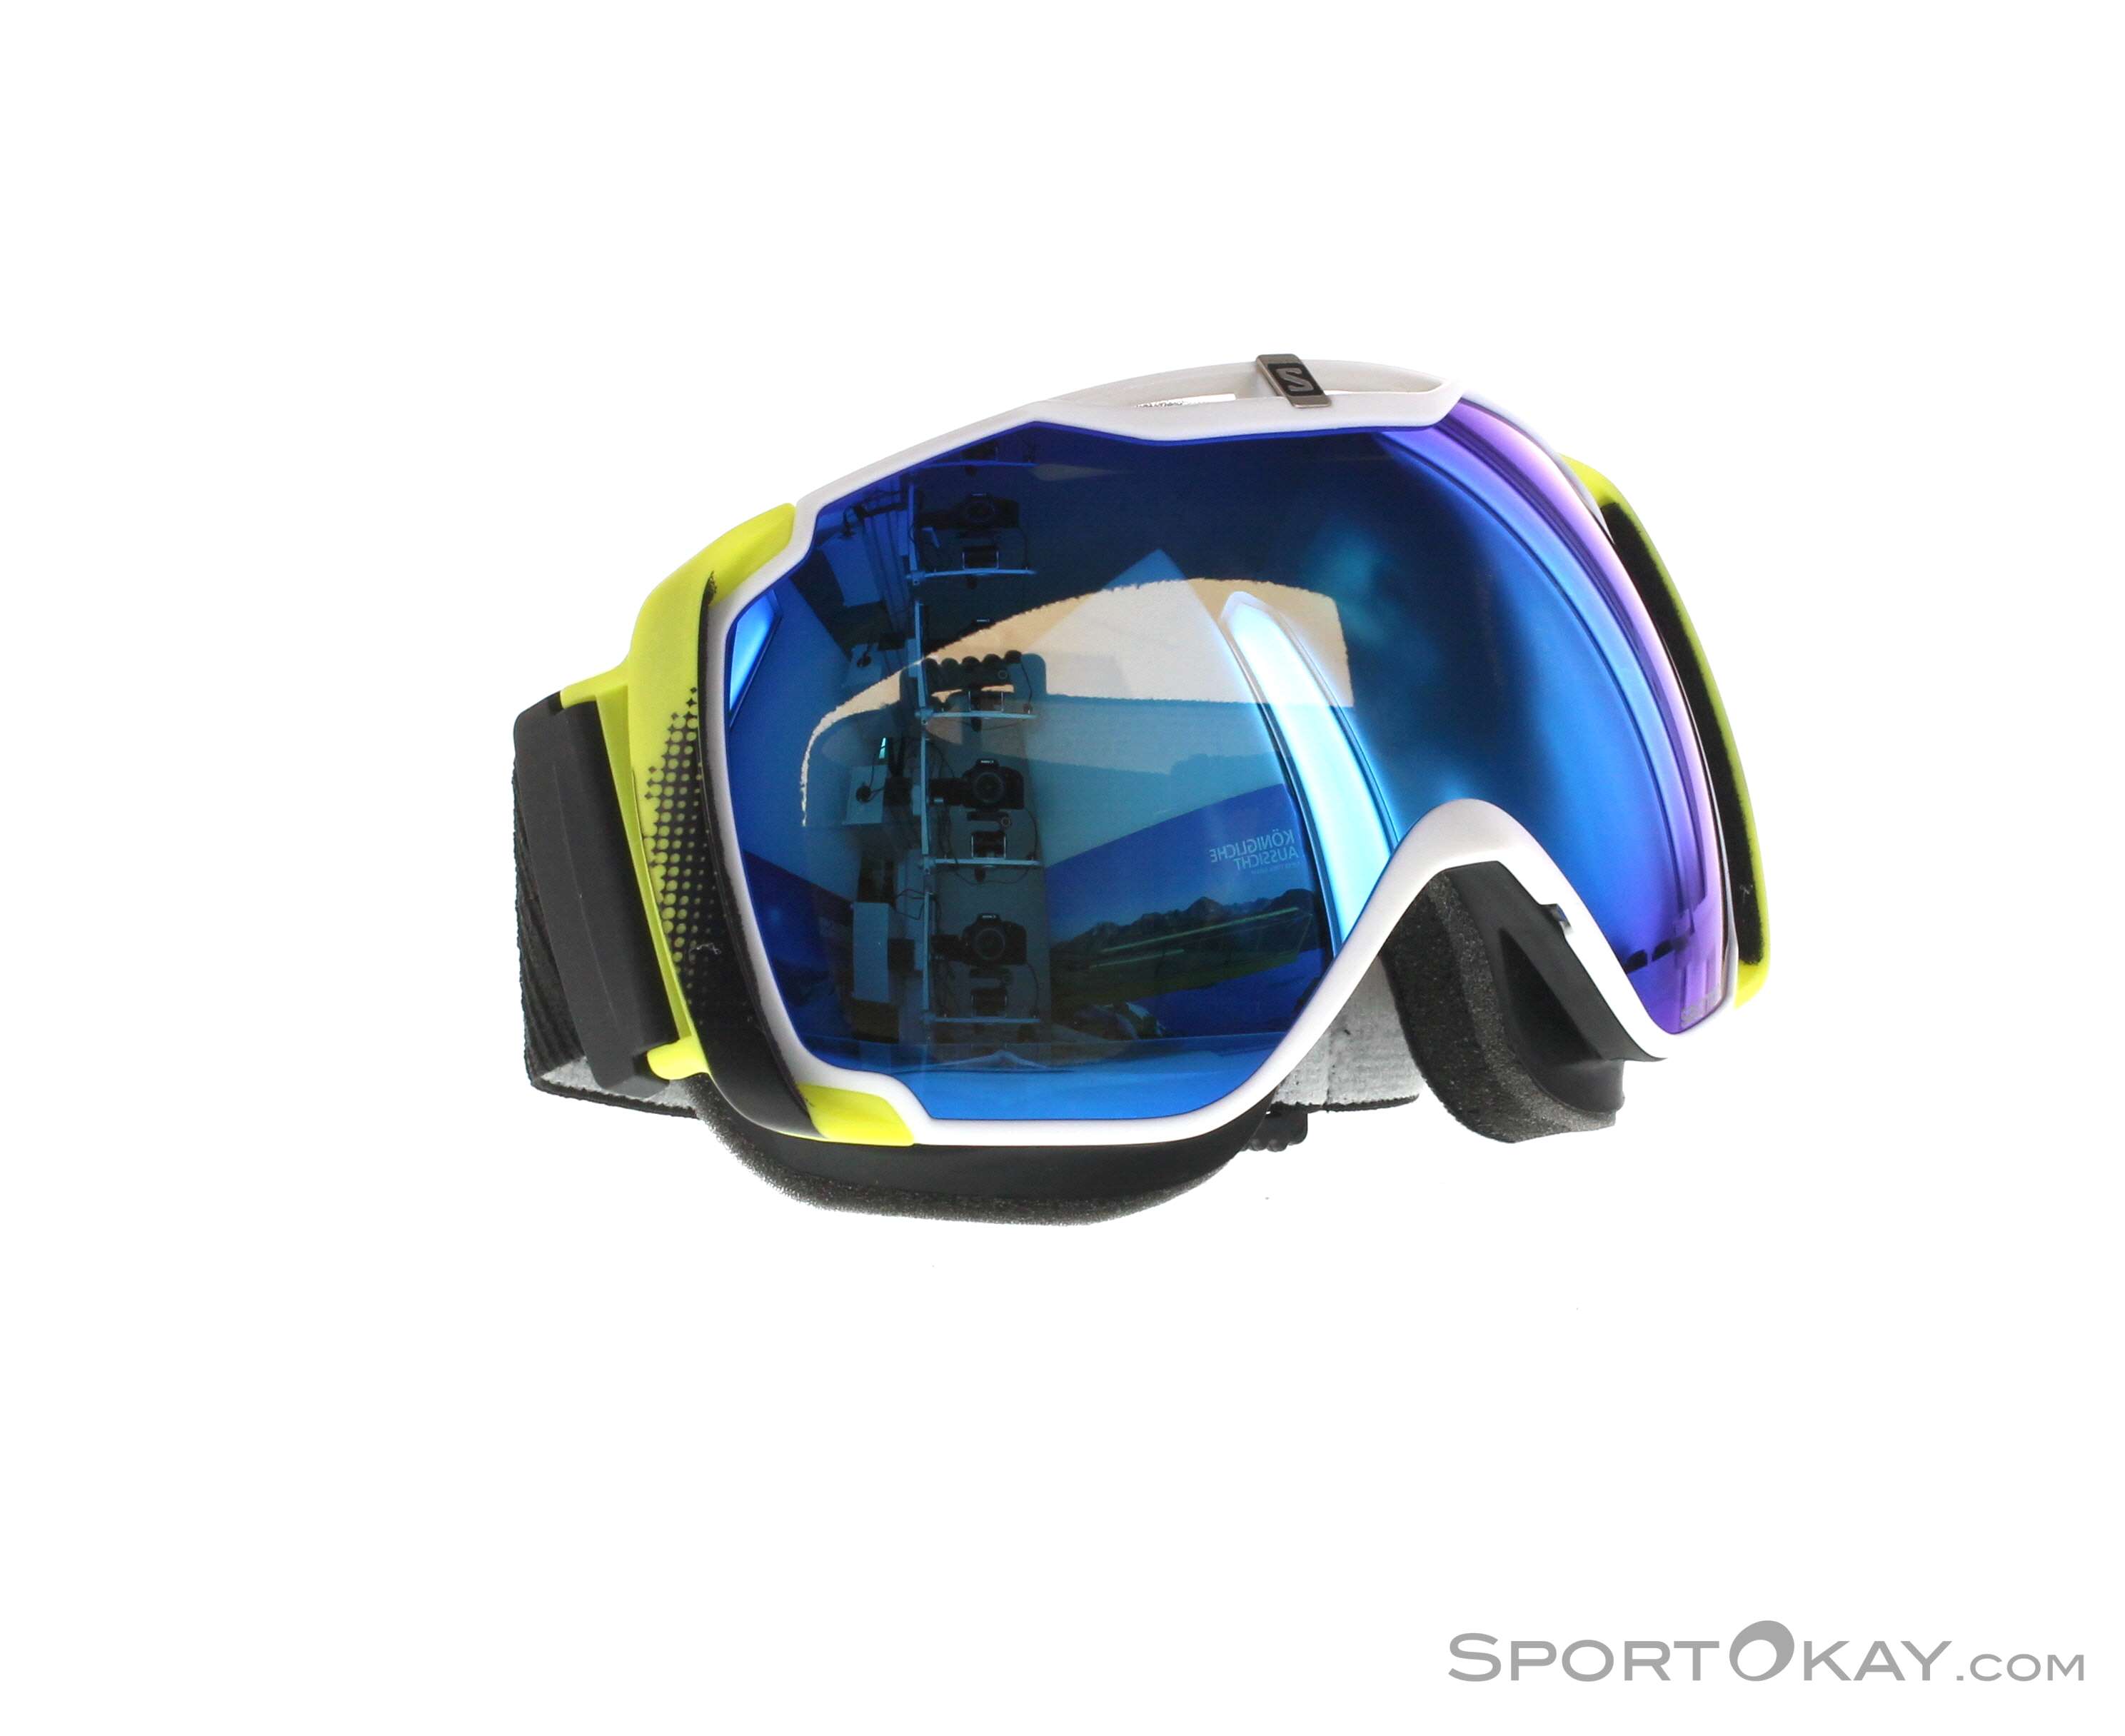 Salomon X-Tend Skibrille - Skibrillen - Skibrillen & Zubehör Ski&Freeride - Alle